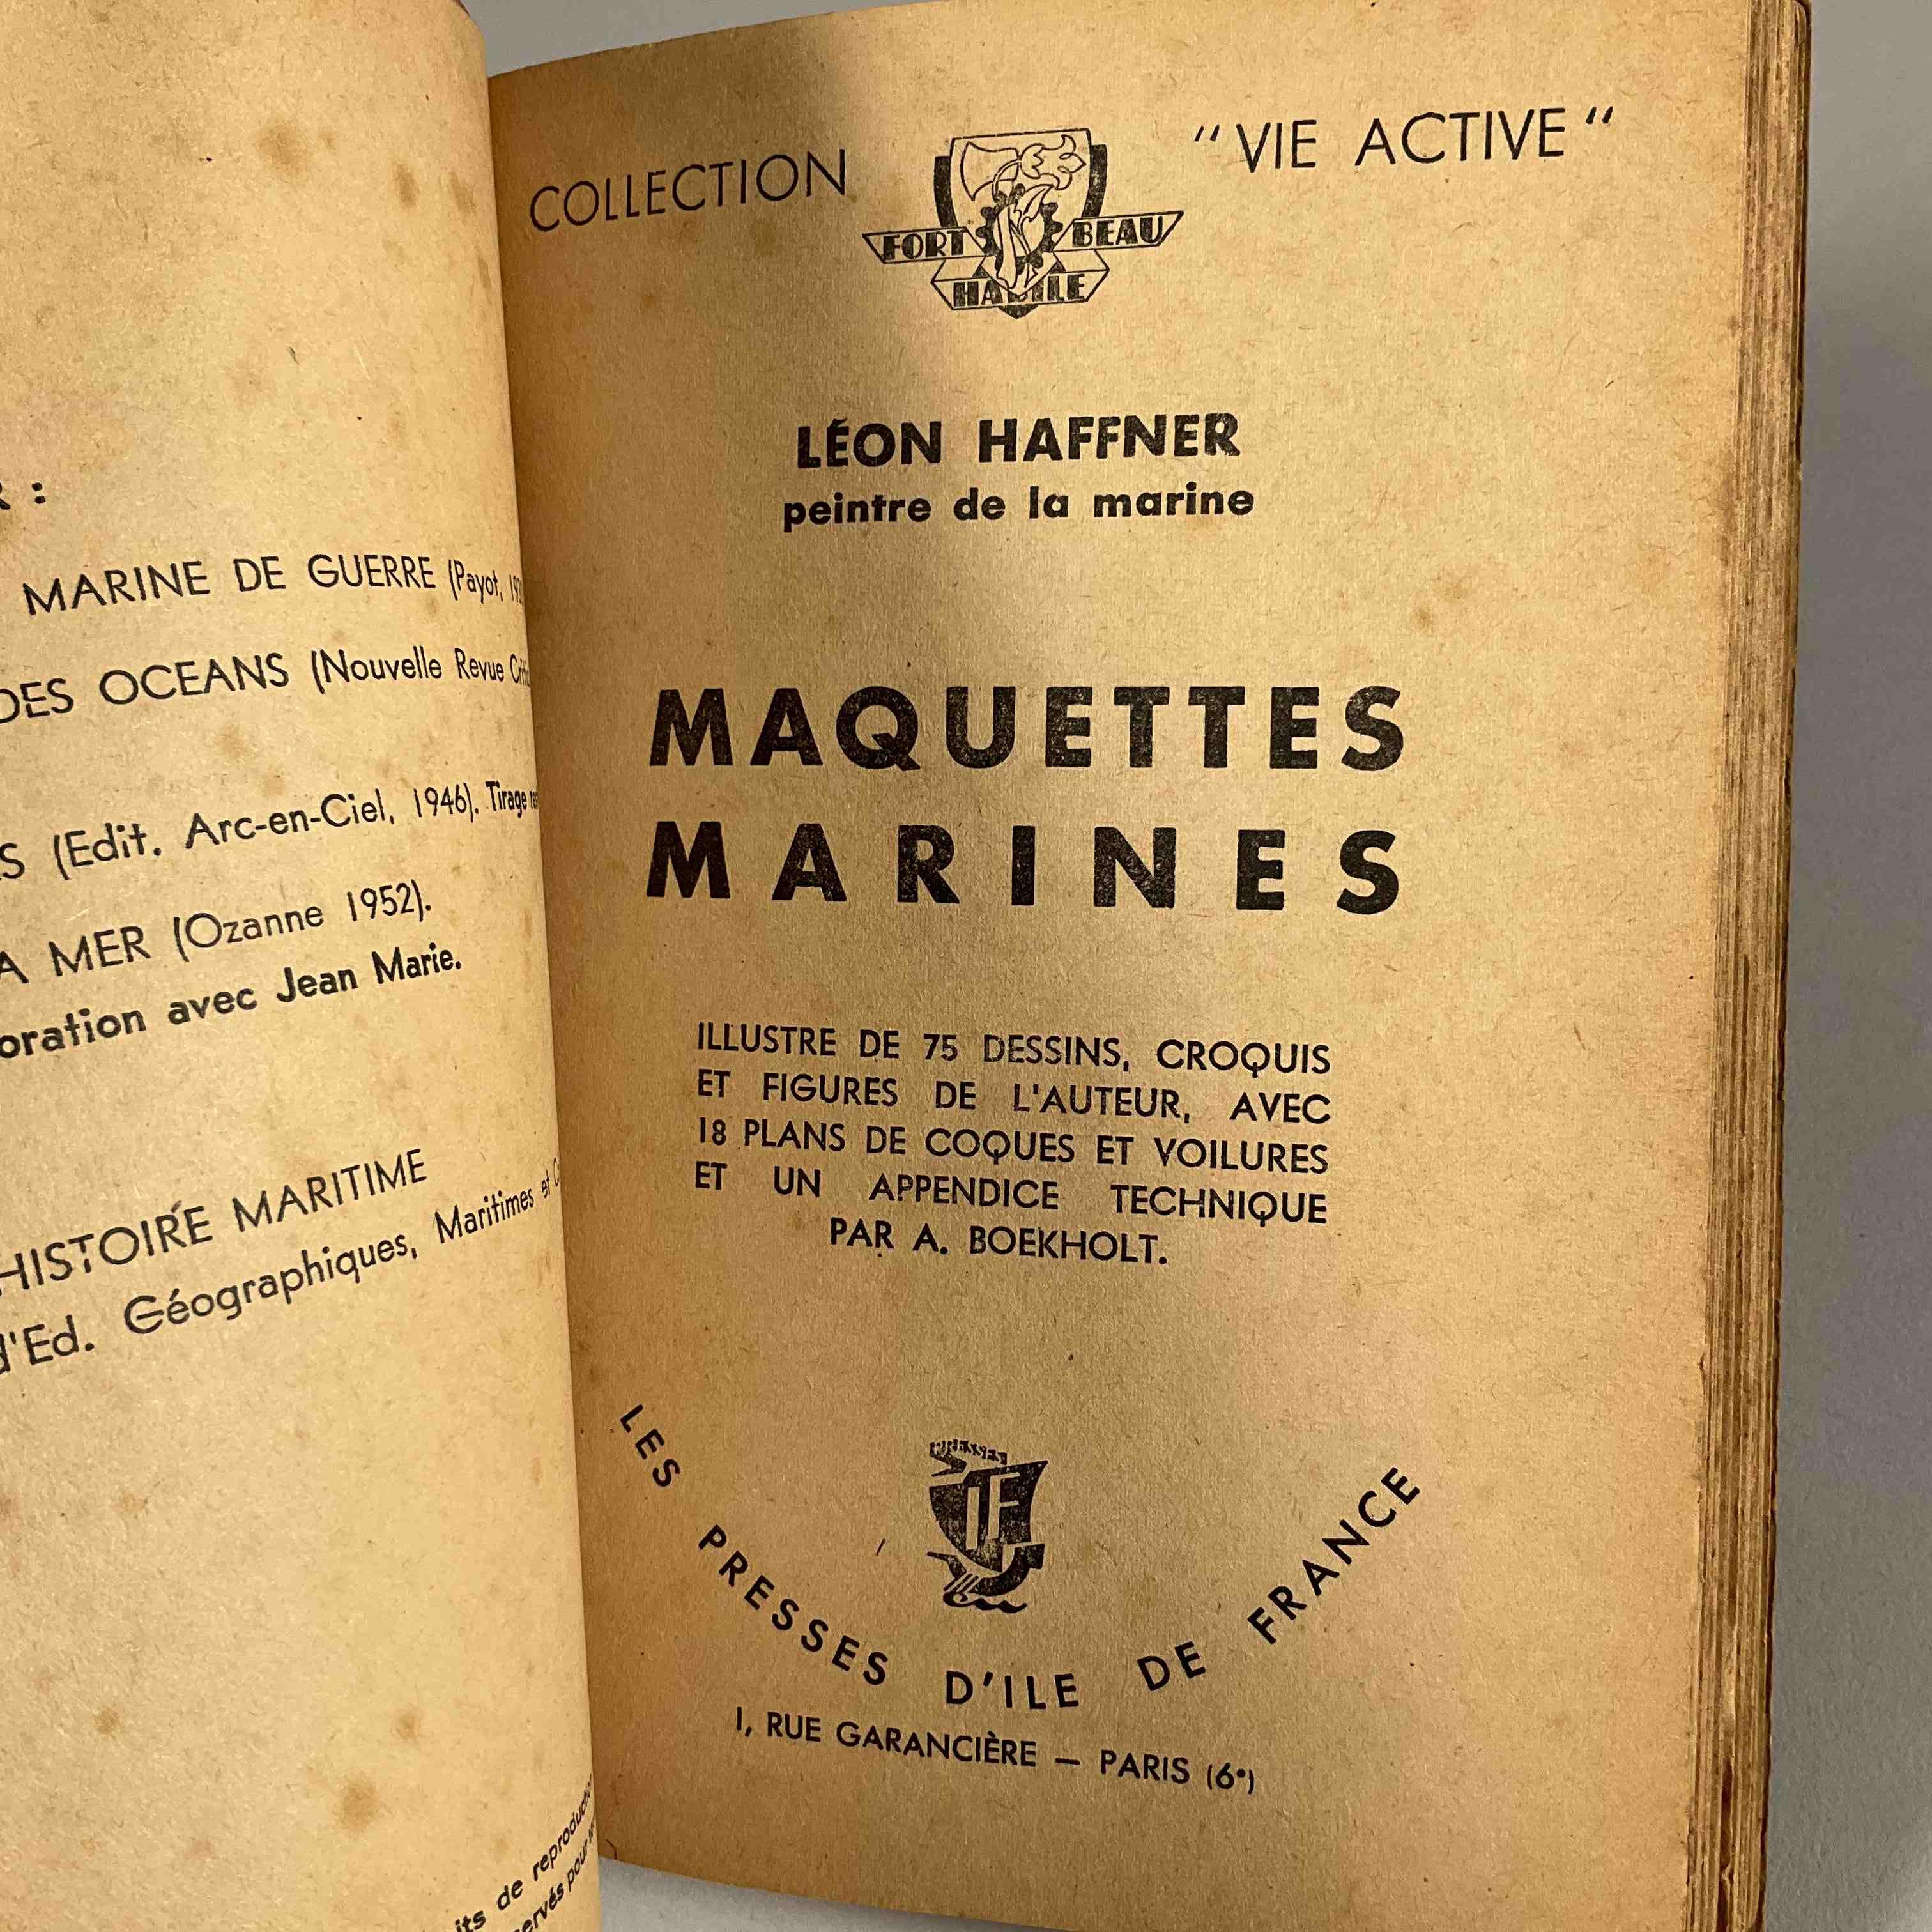 Léon HAFFNER, Maquettes marines - Croquis et plans réunis par...